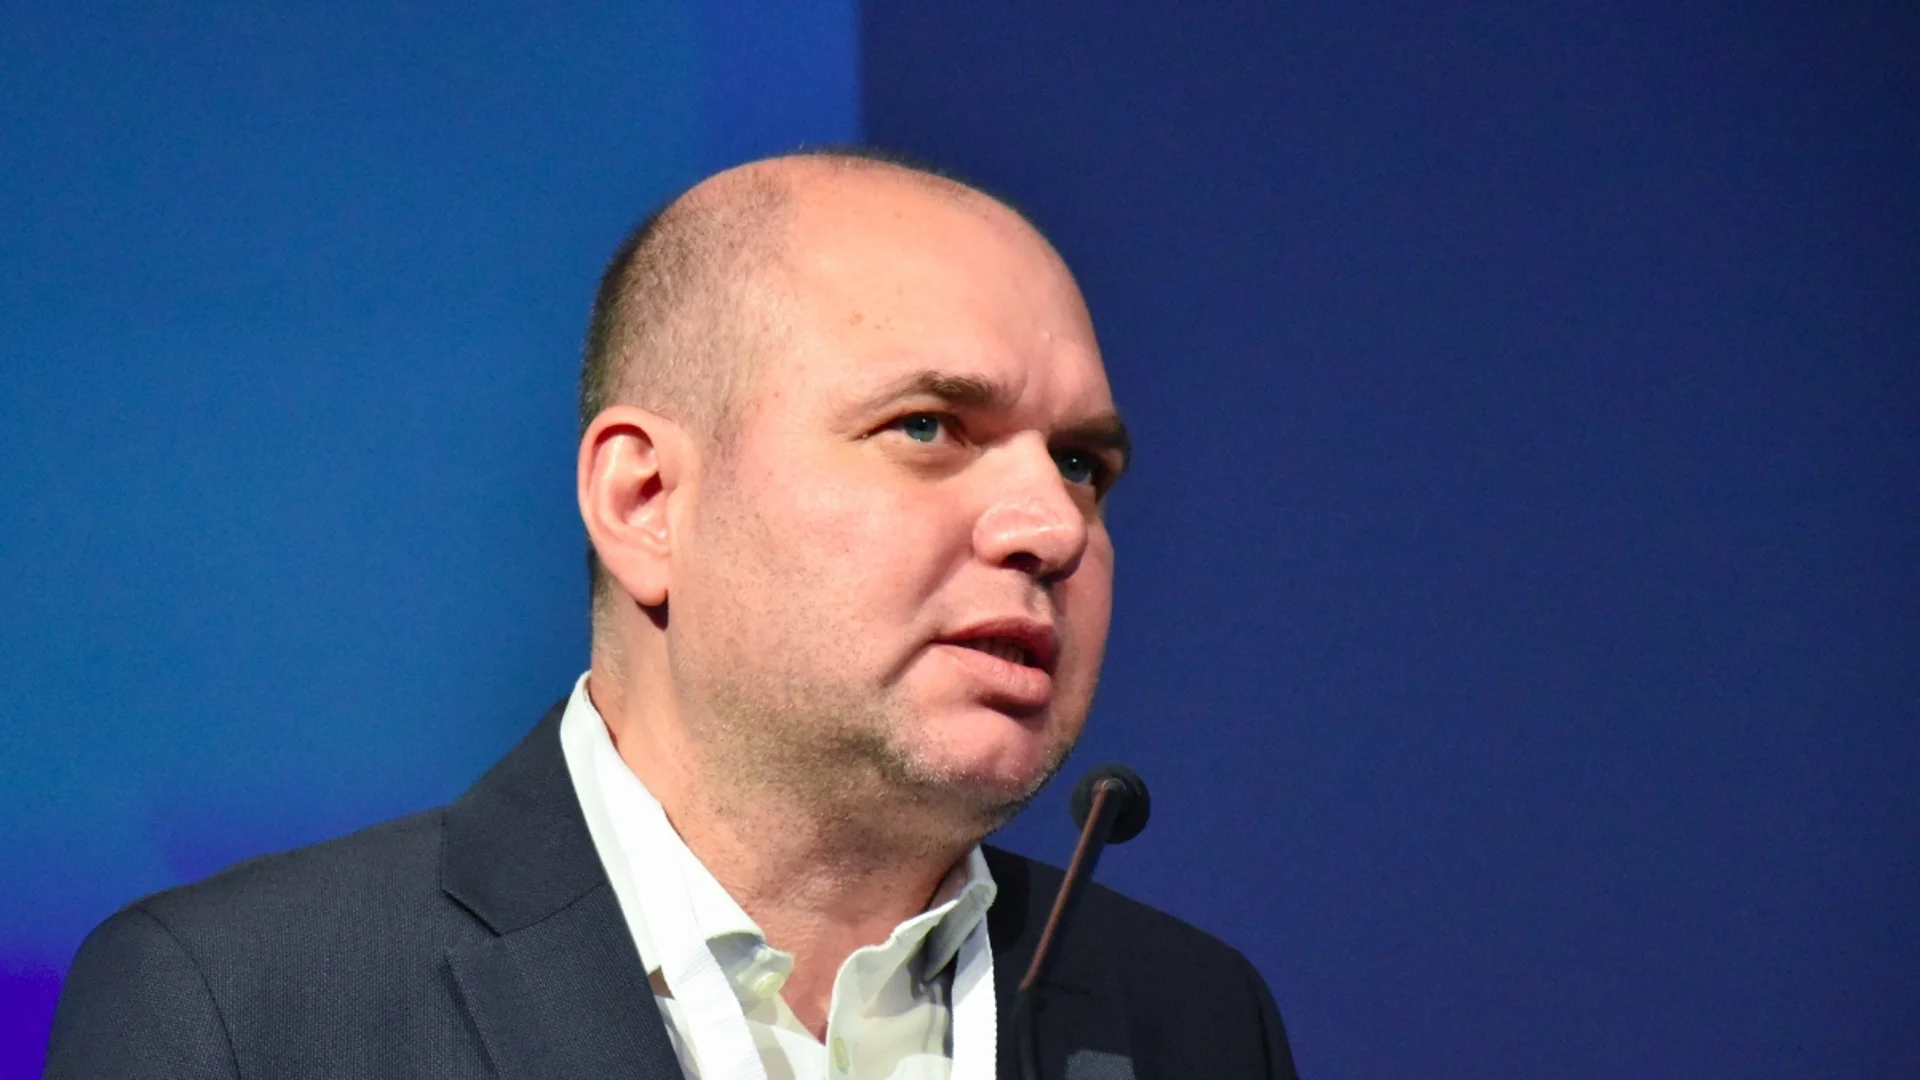 Владислав Панев: Не е обсъждана оставката на здравния министър